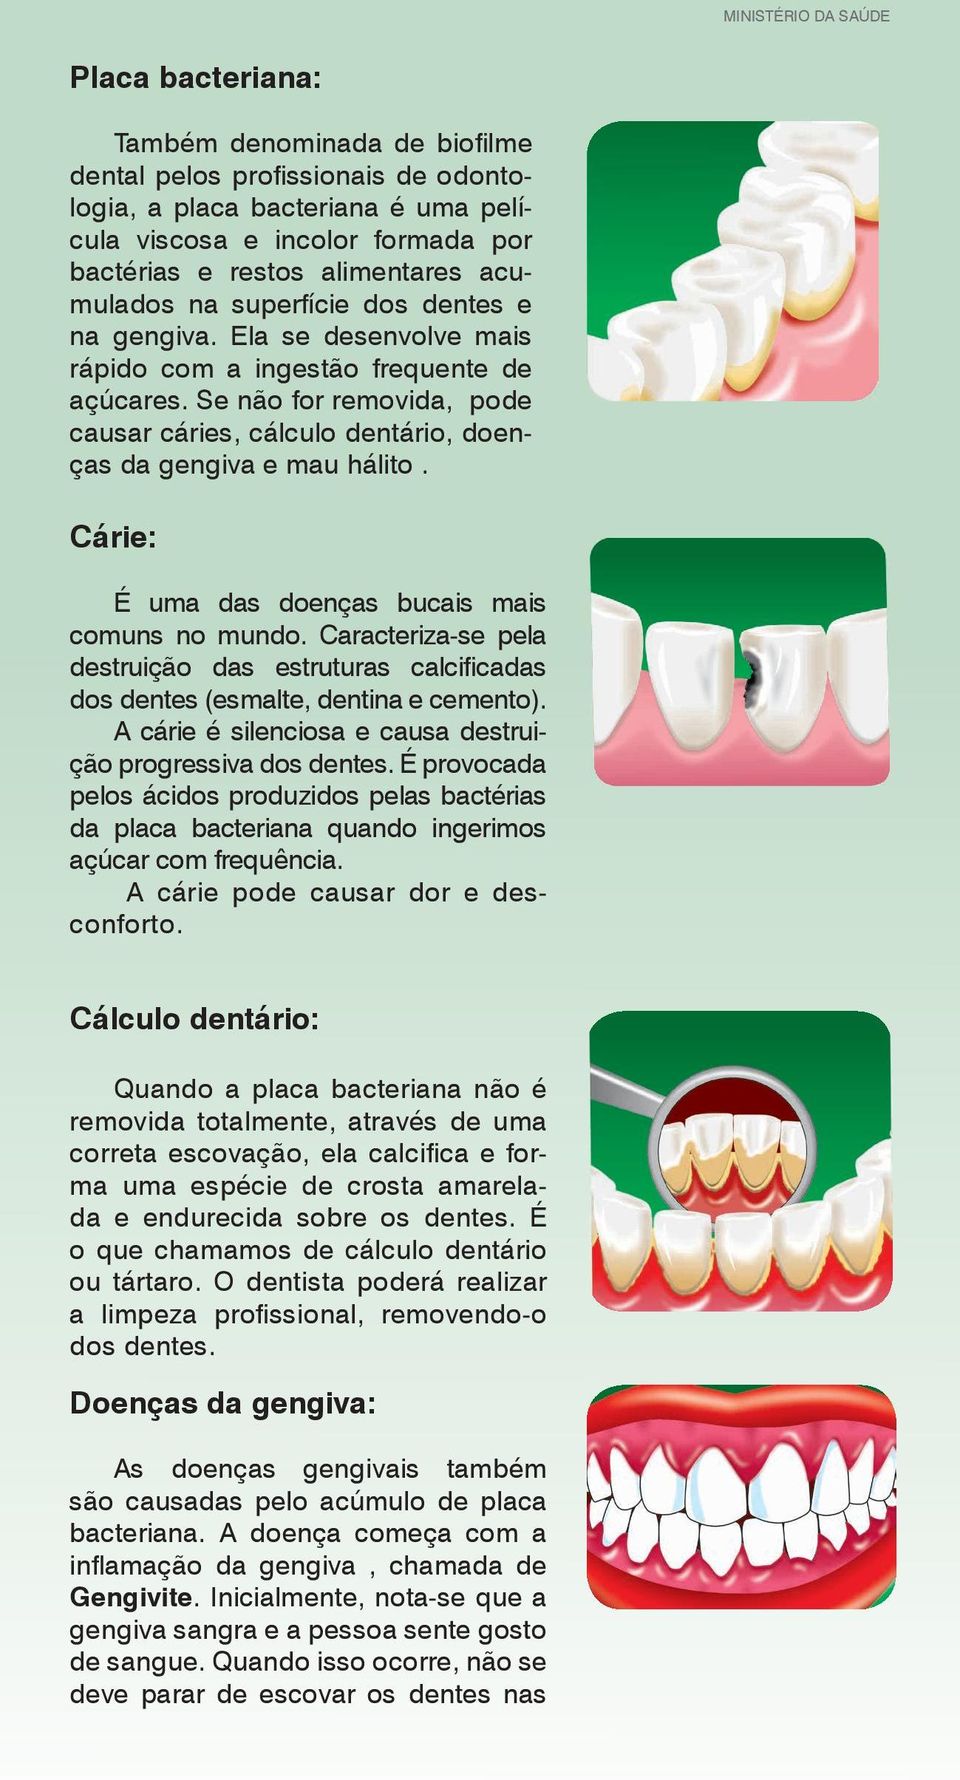 Cárie: É uma das doenças bucais mais comuns no mundo. Caracteriza-se pela destruição das estruturas calcifi cadas dos dentes (esmalte, dentina e cemento).